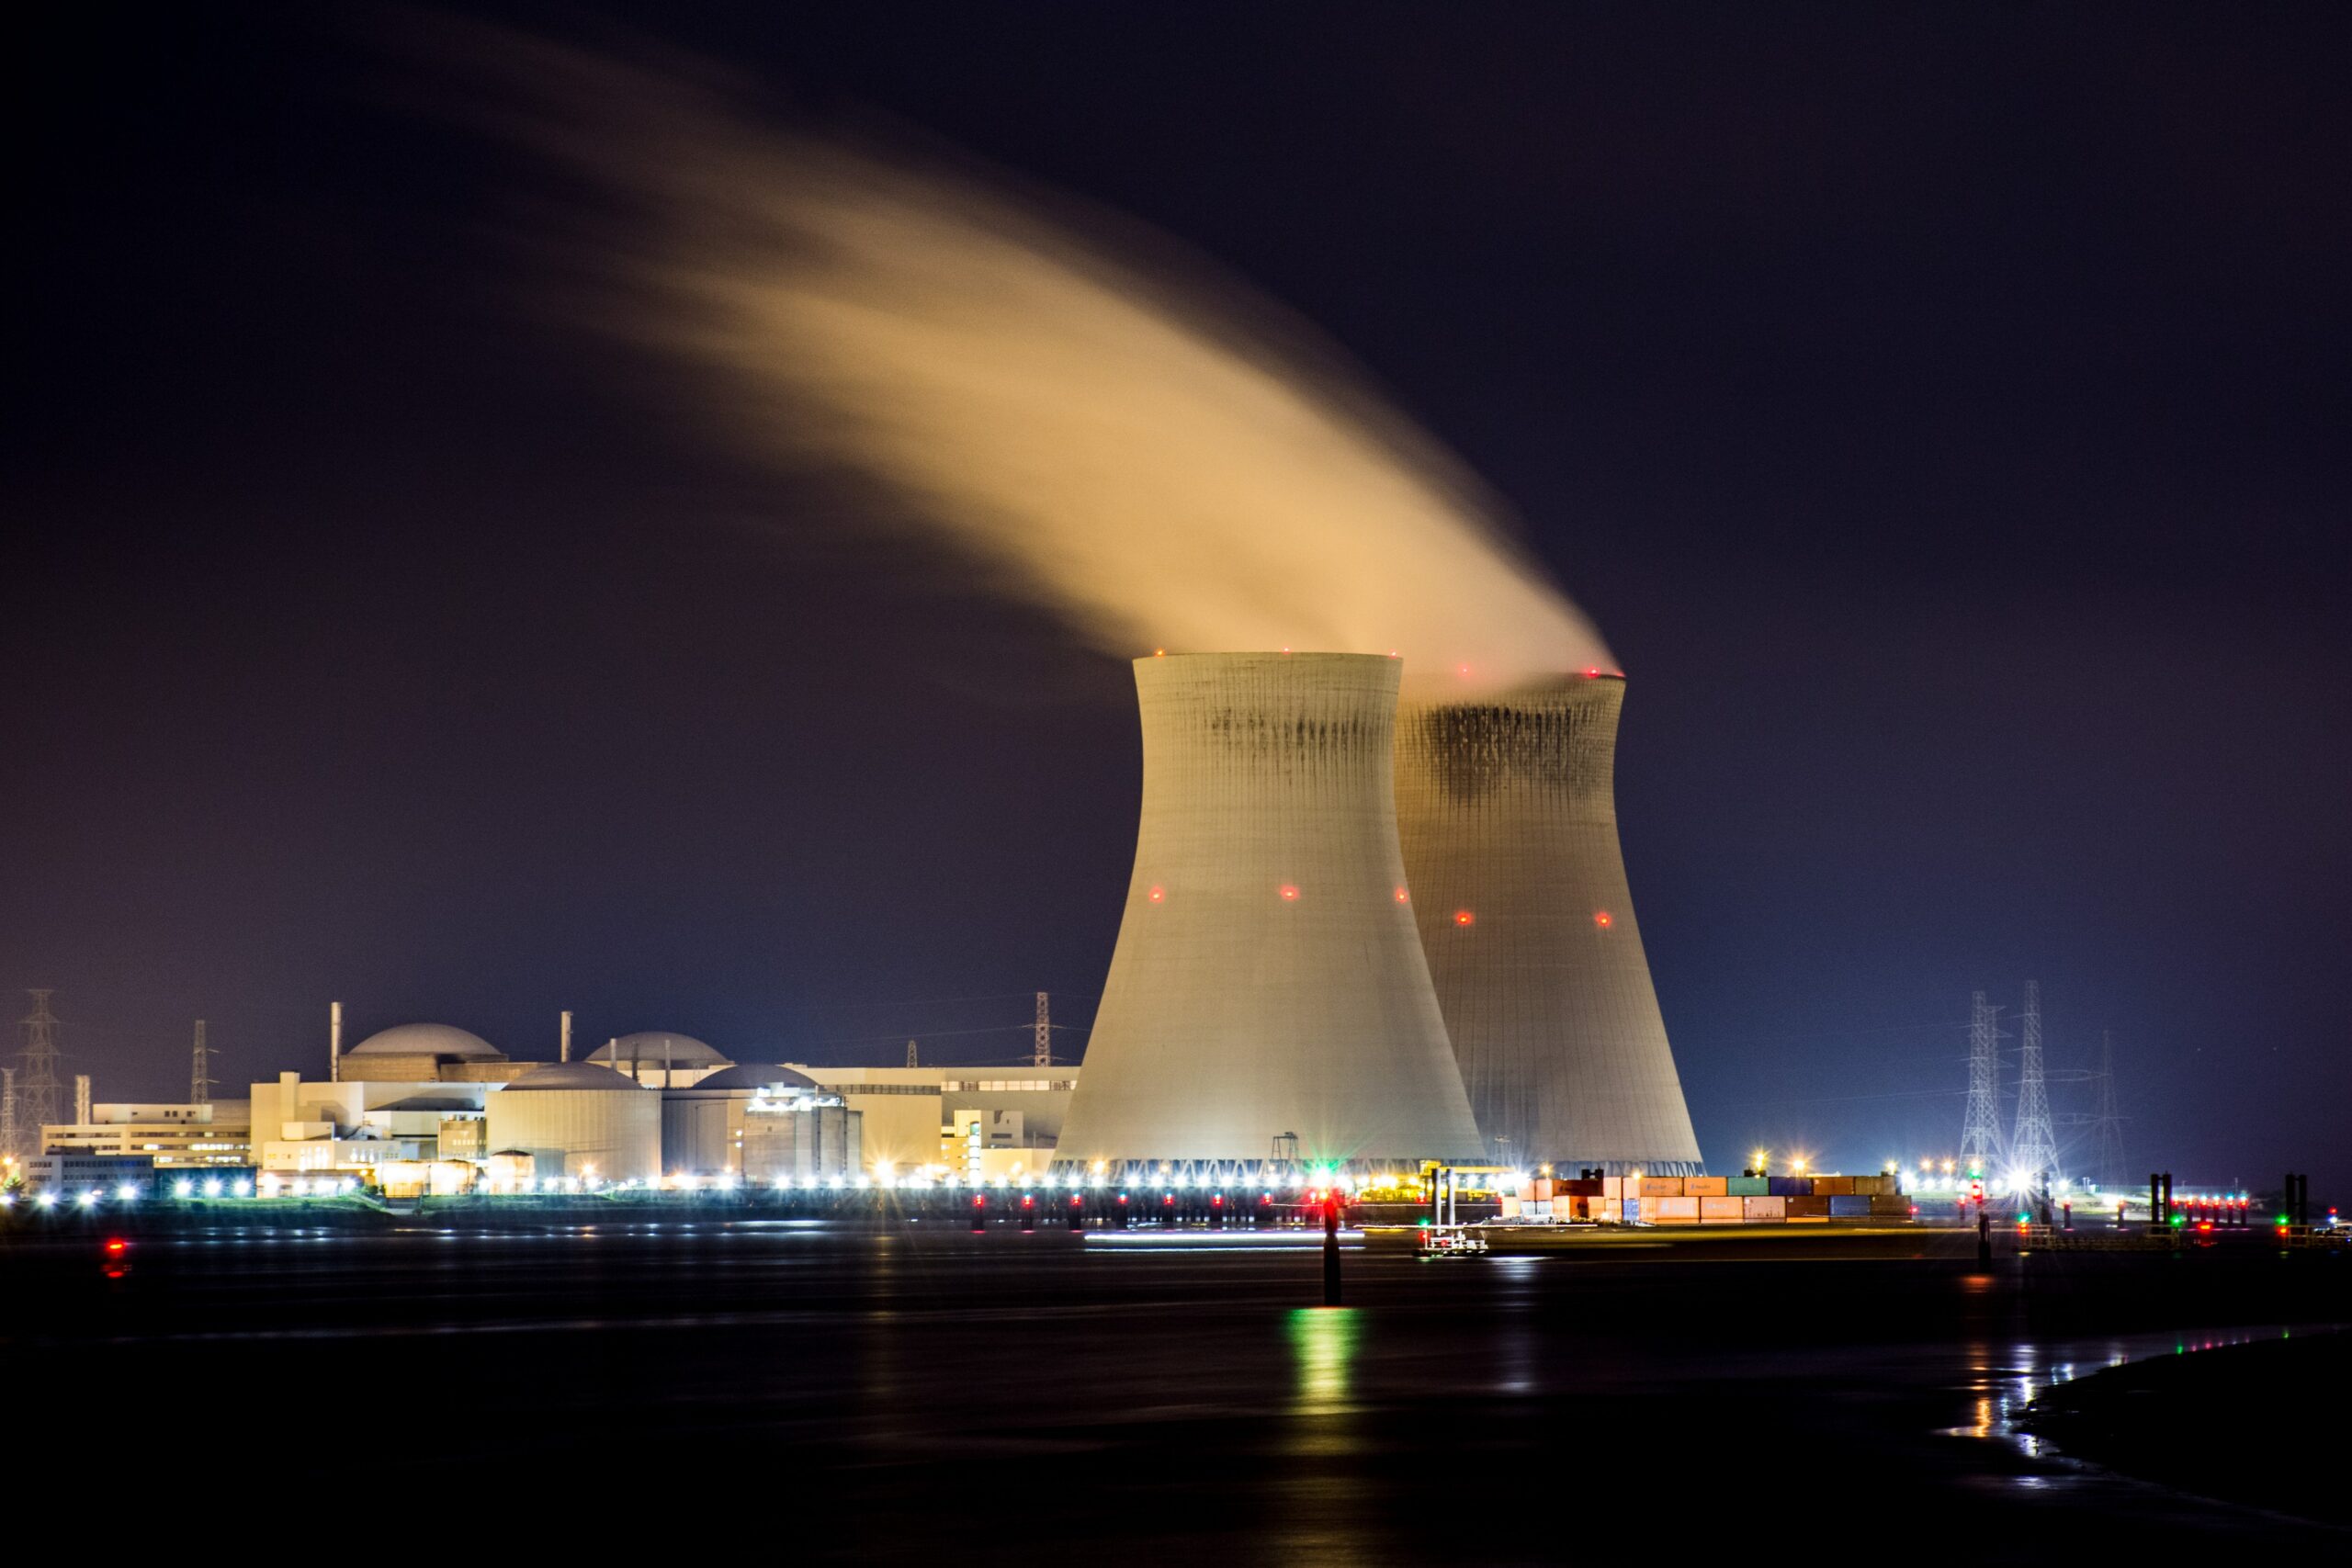 Les autorités réglementaires américaines souhaiteraient traiter la fusion nucléaire moins rigoureusement que la fission